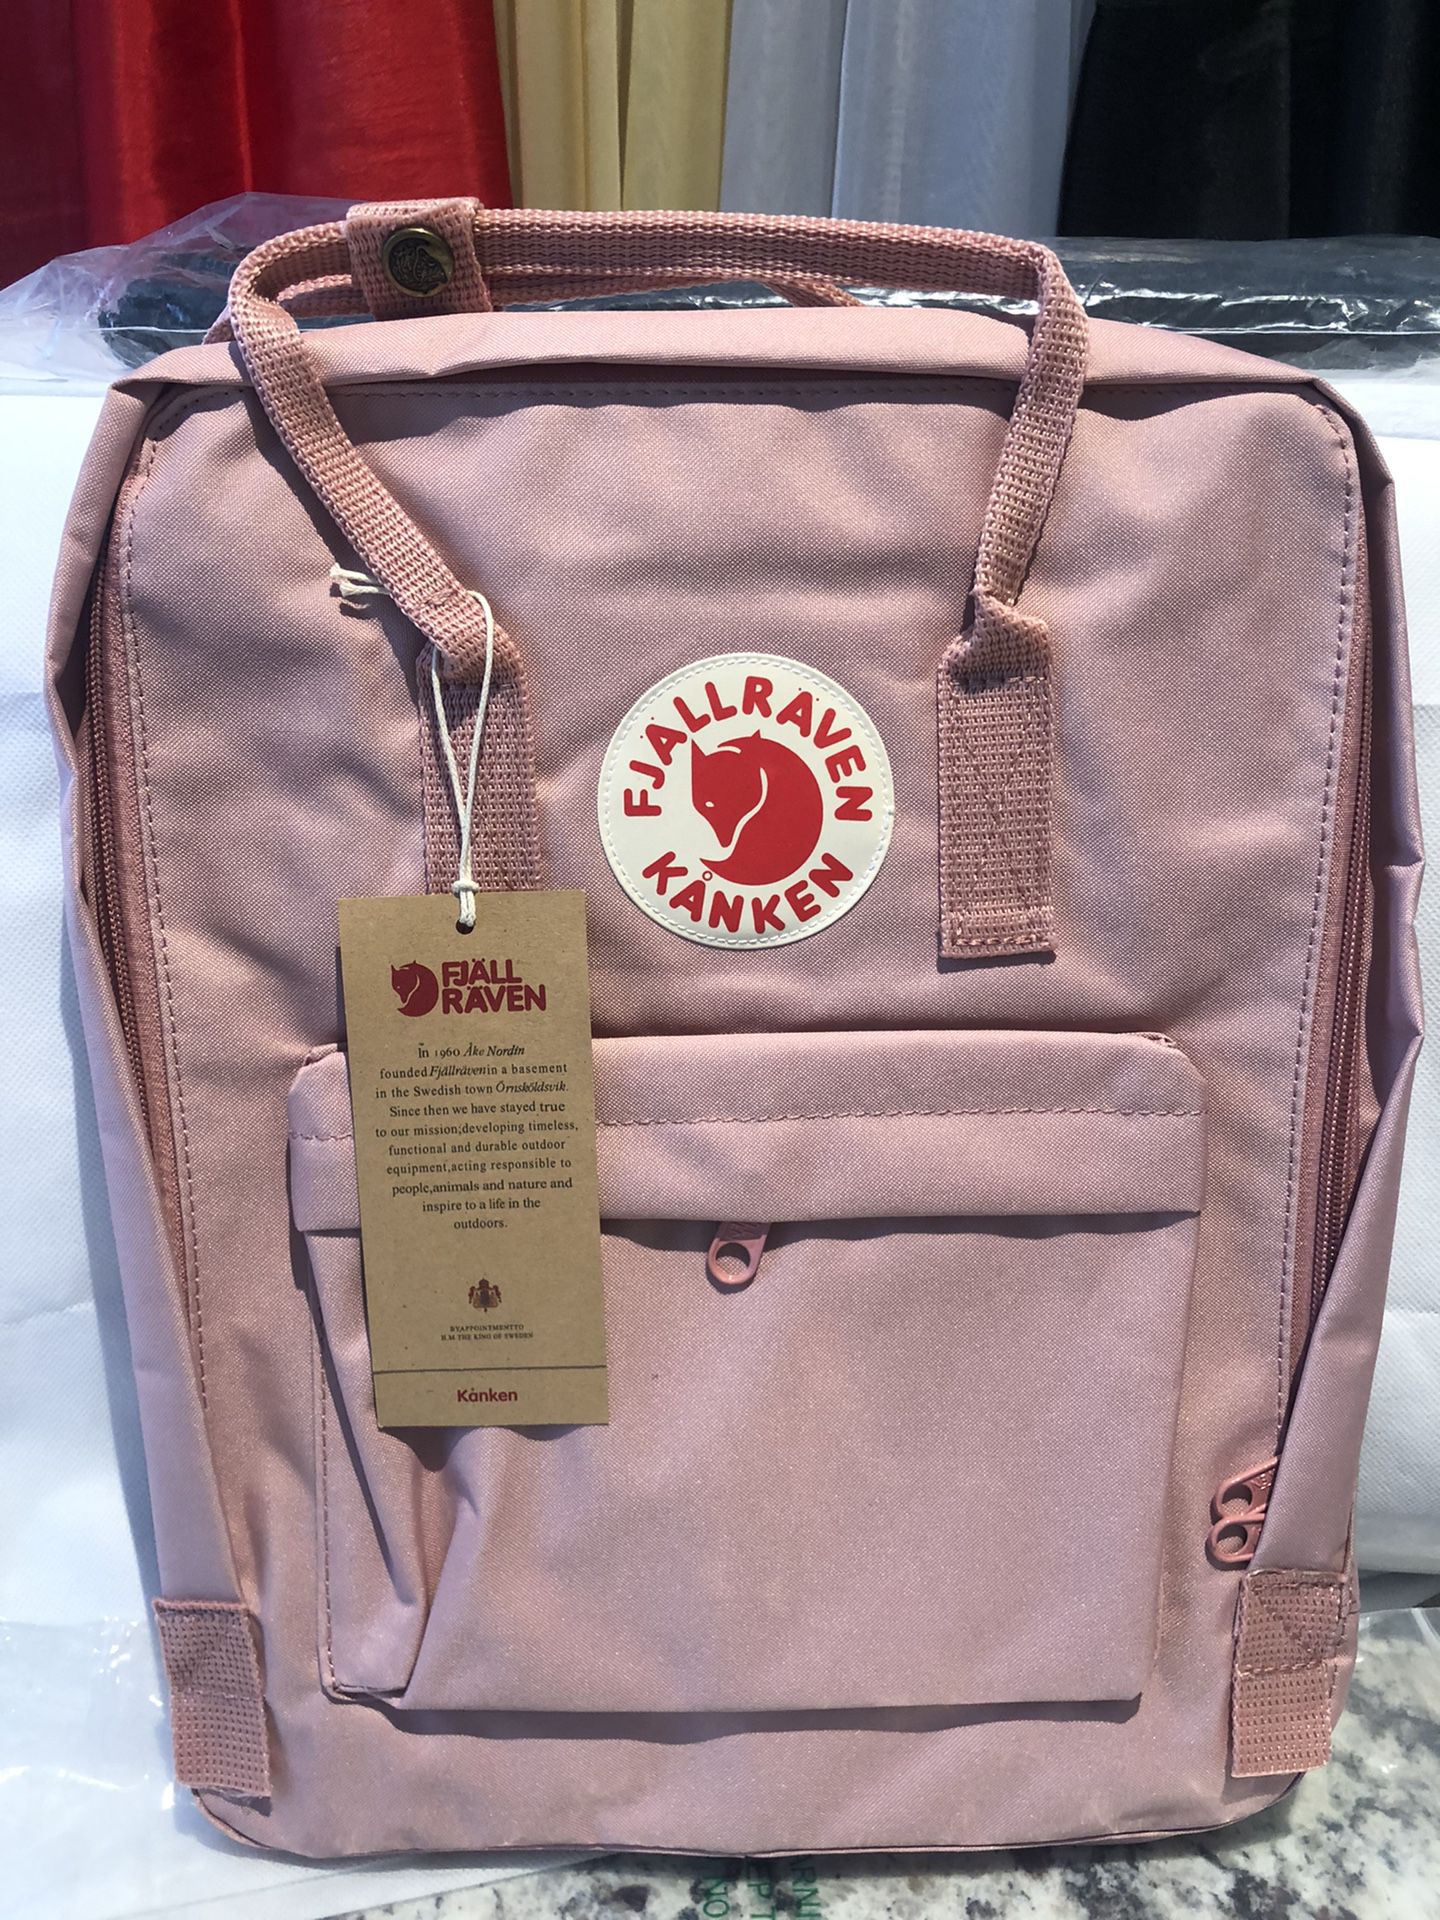 Fajllraven- KanKen medium backpack $40 Great Christmas Gift 🎁 🎄